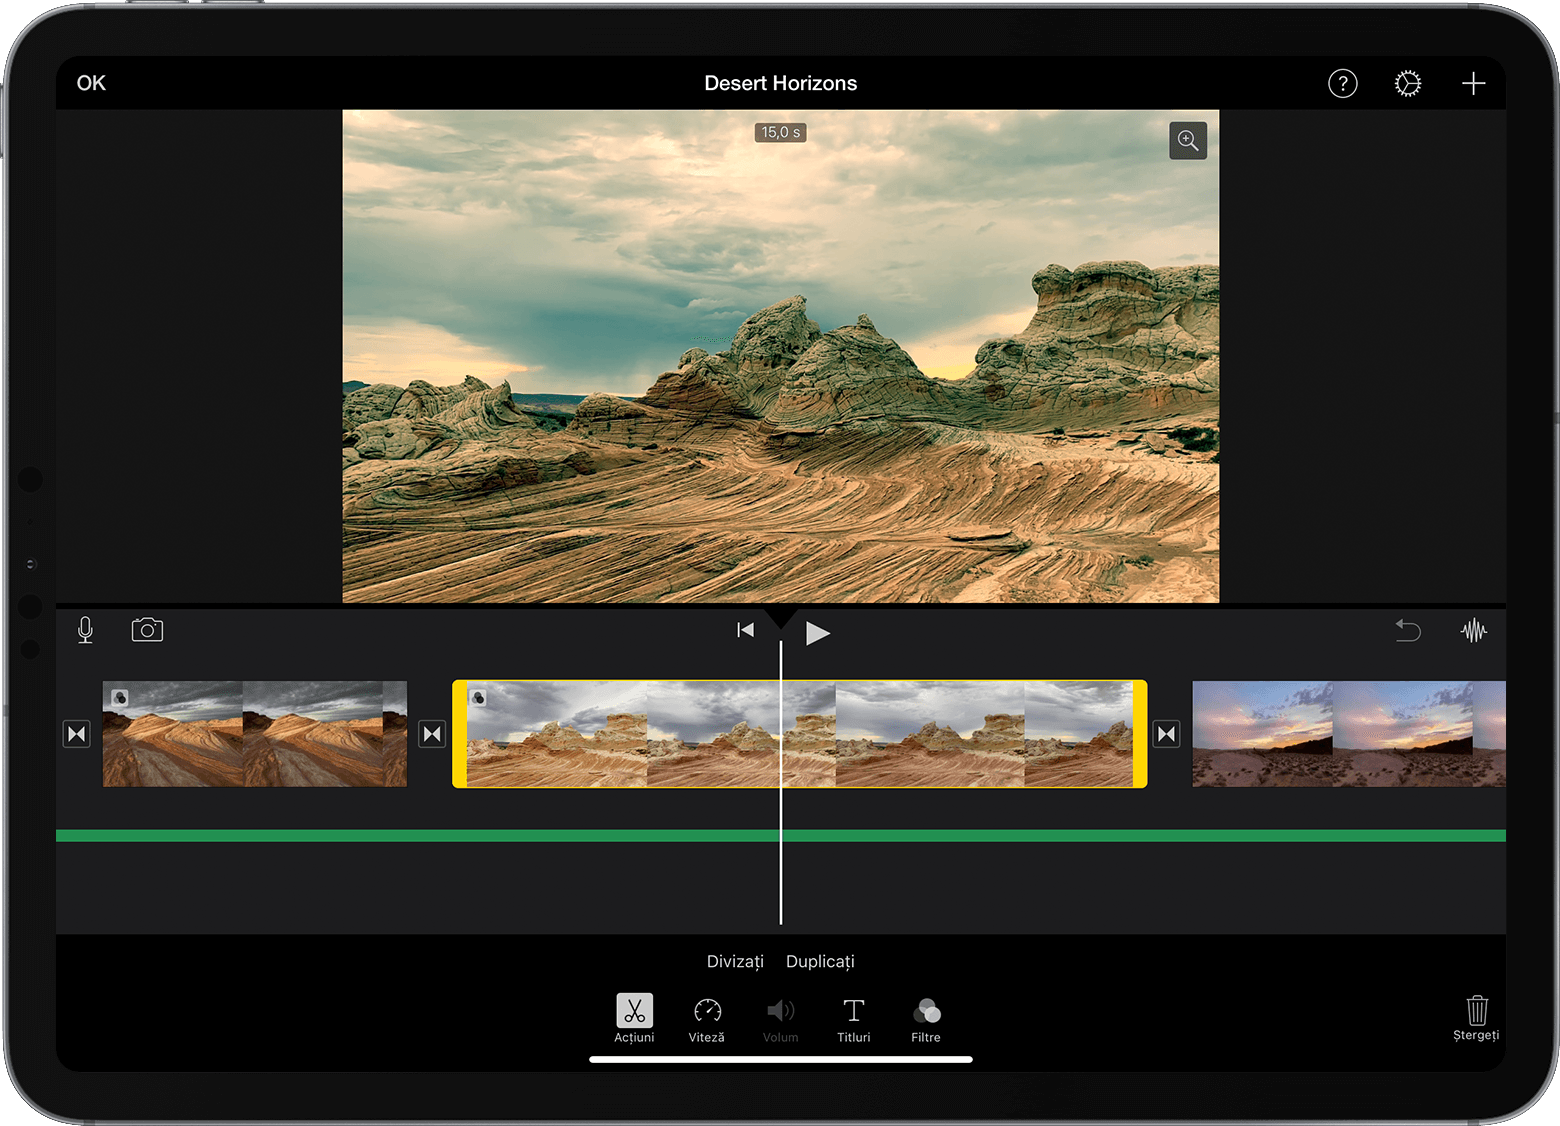 Proiectul iMovie pe iPad se deschide cu un videoclip selectat în cronologie